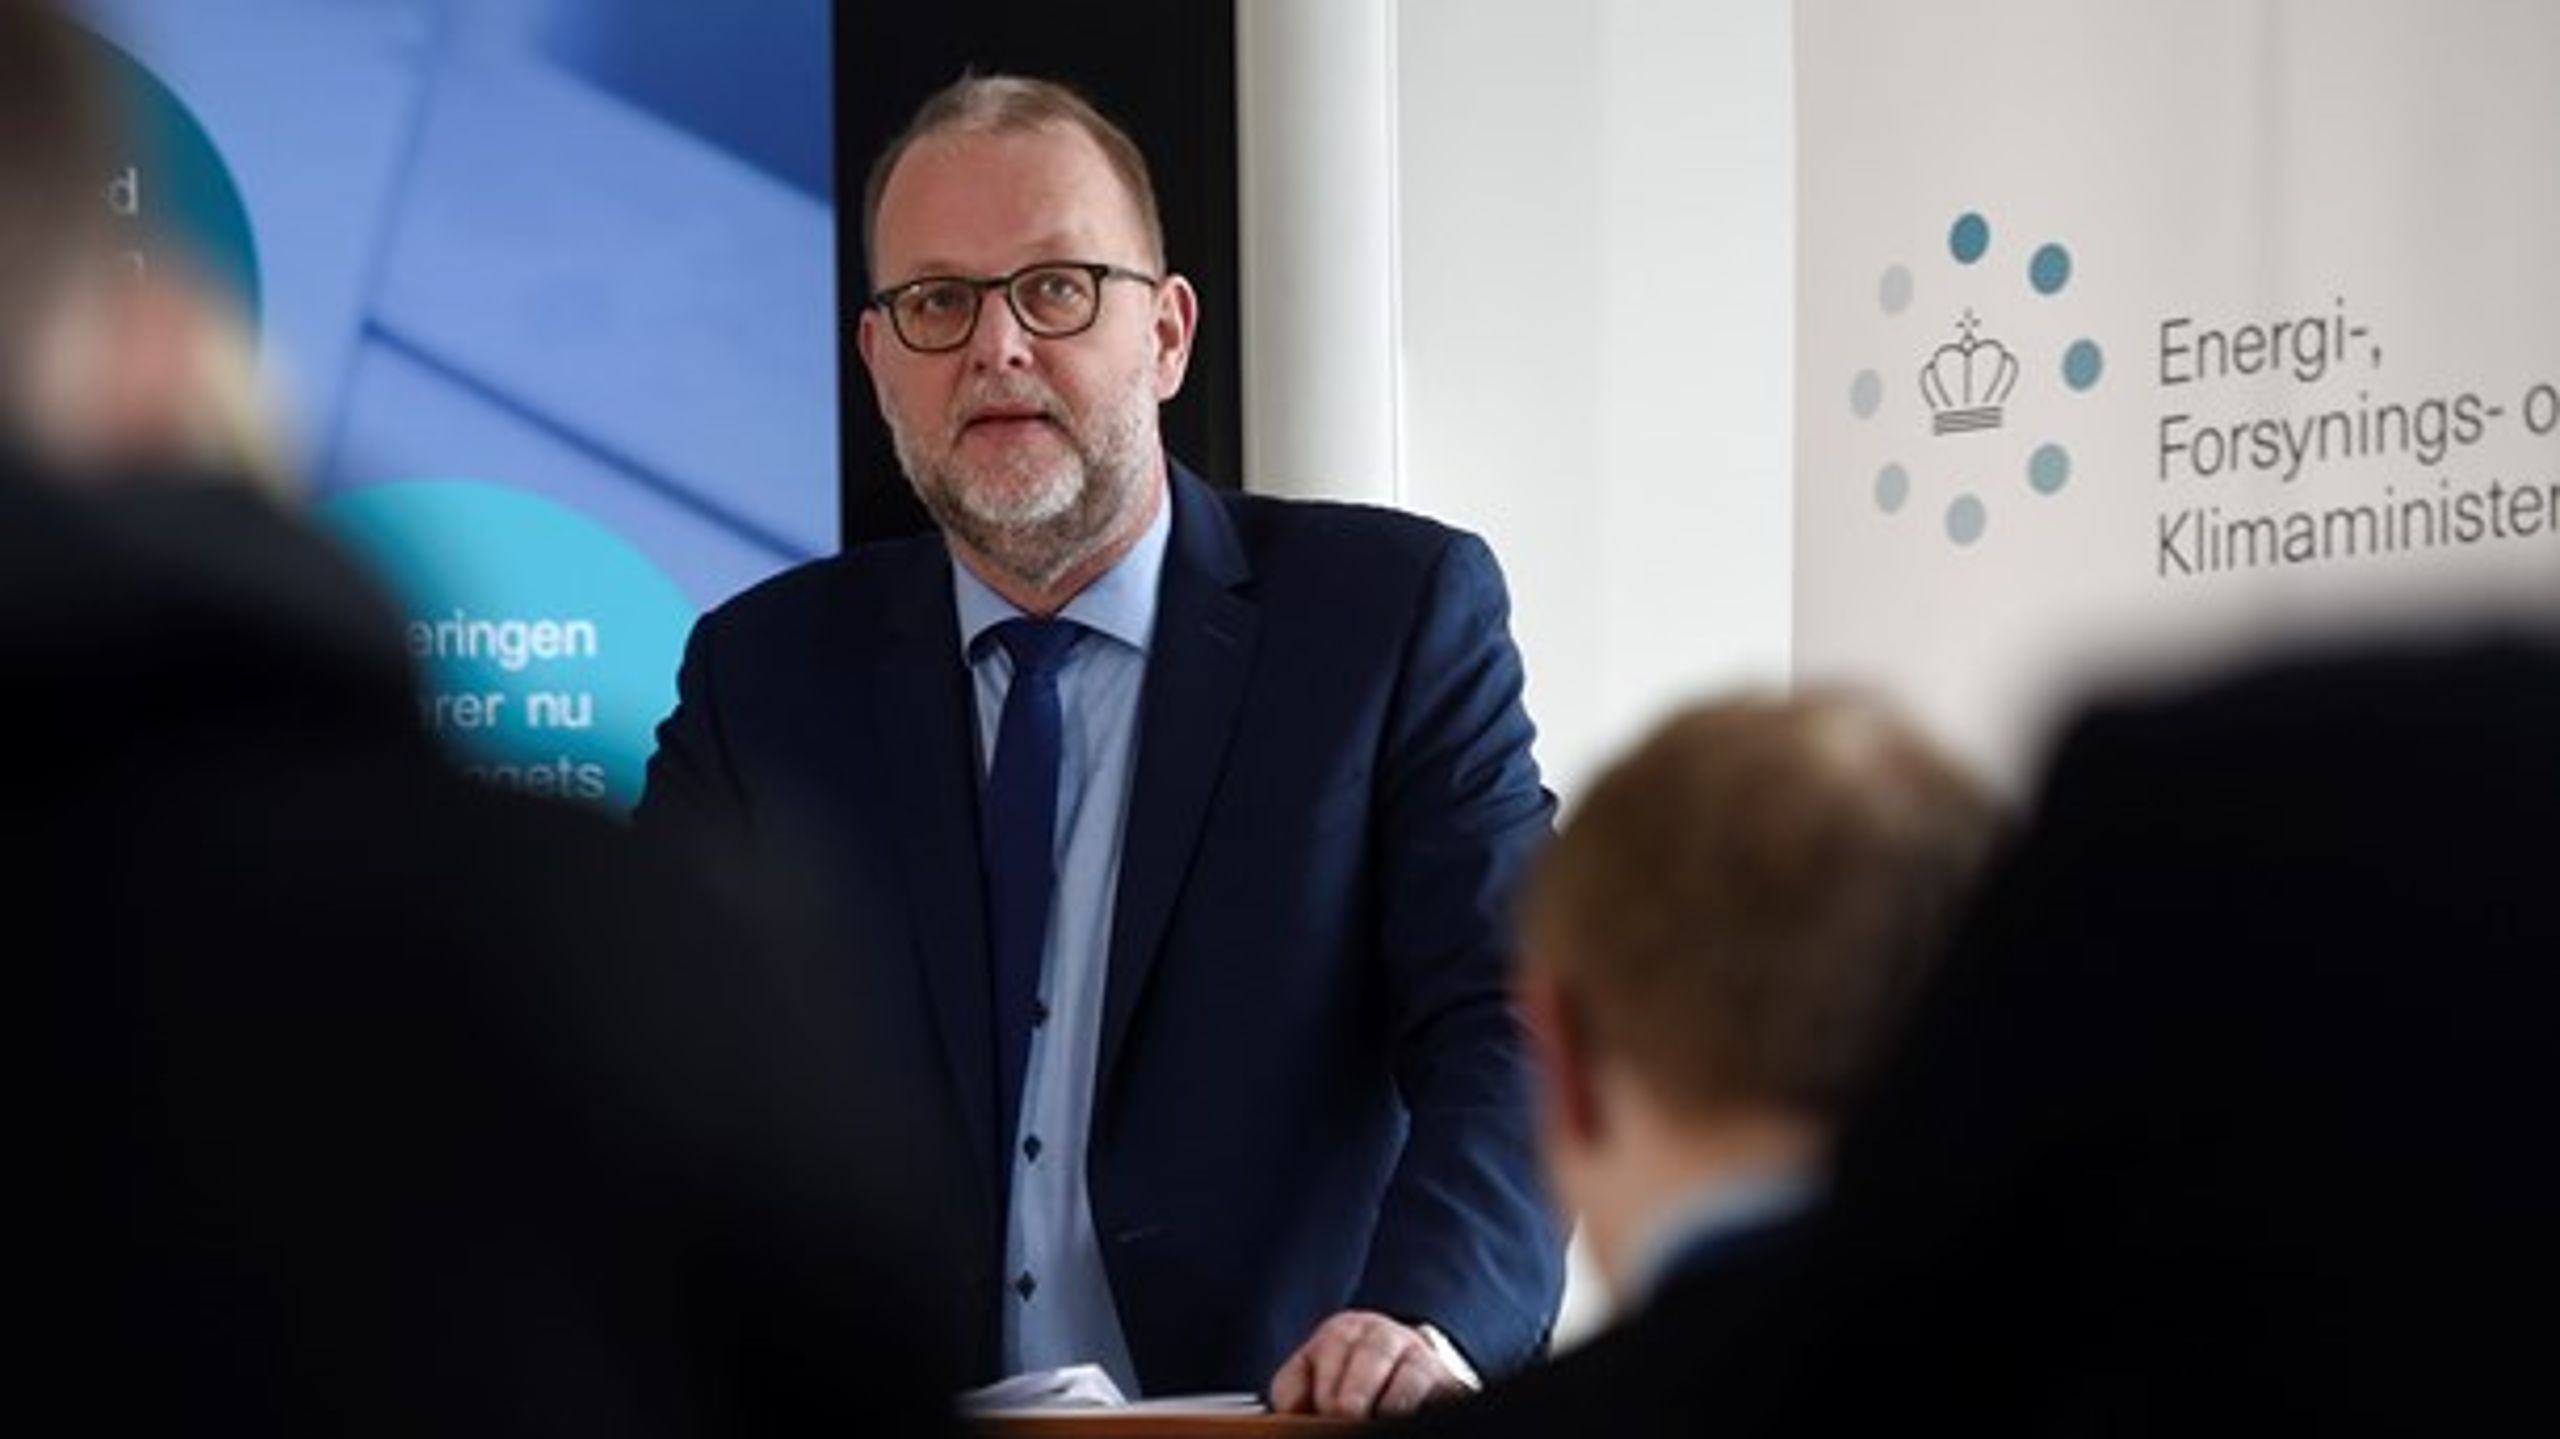 Debatten om konkurrencen på det danske bredbåndsmarked har ført til, at forsyningsminister Lars Christian Lilleholt (V) blev indkaldt i samråd.